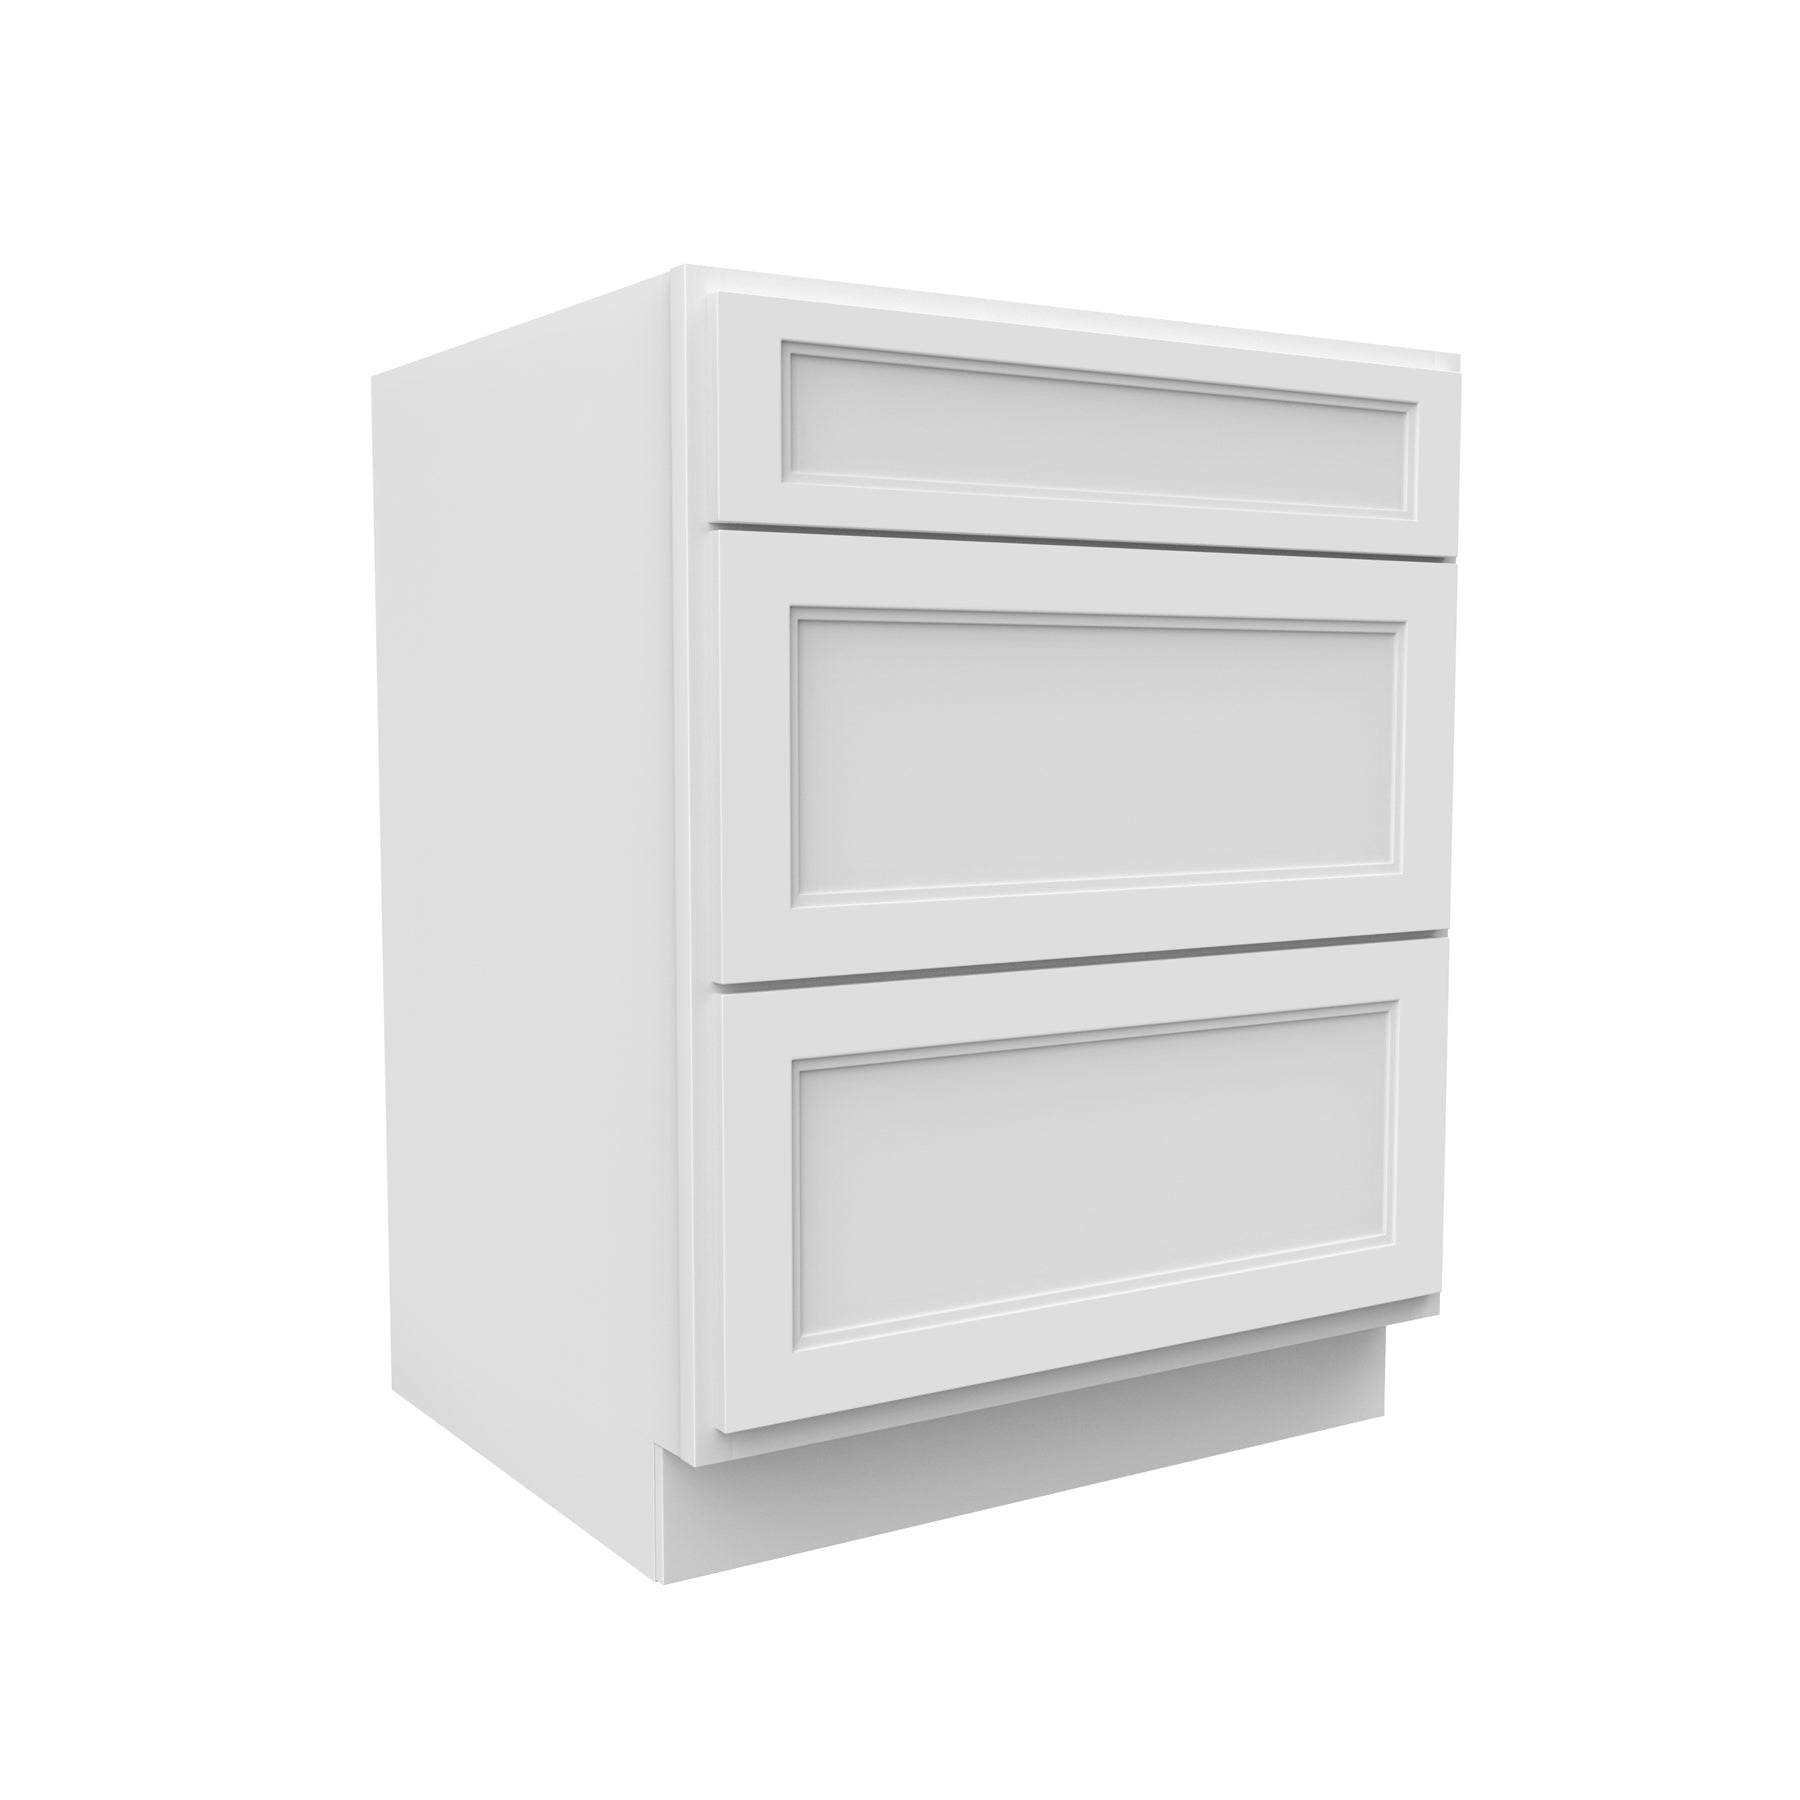 RTA - Fashion White - 3 Drawer Base Cabinet | 27"W x 34.5"H x 24"D